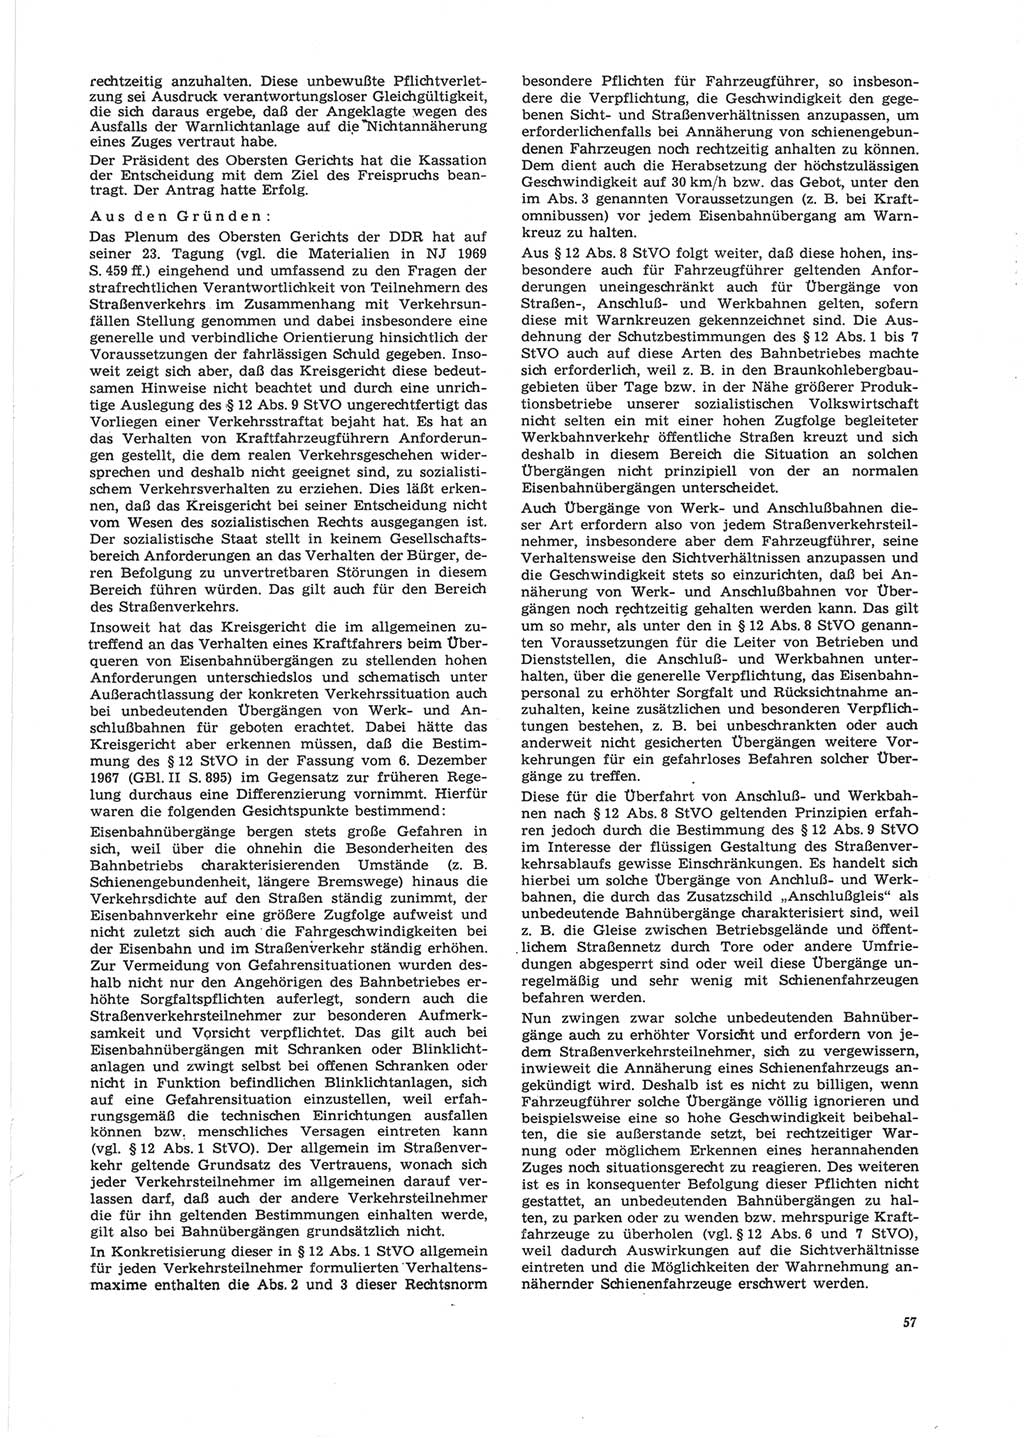 Neue Justiz (NJ), Zeitschrift für Recht und Rechtswissenschaft [Deutsche Demokratische Republik (DDR)], 24. Jahrgang 1970, Seite 57 (NJ DDR 1970, S. 57)